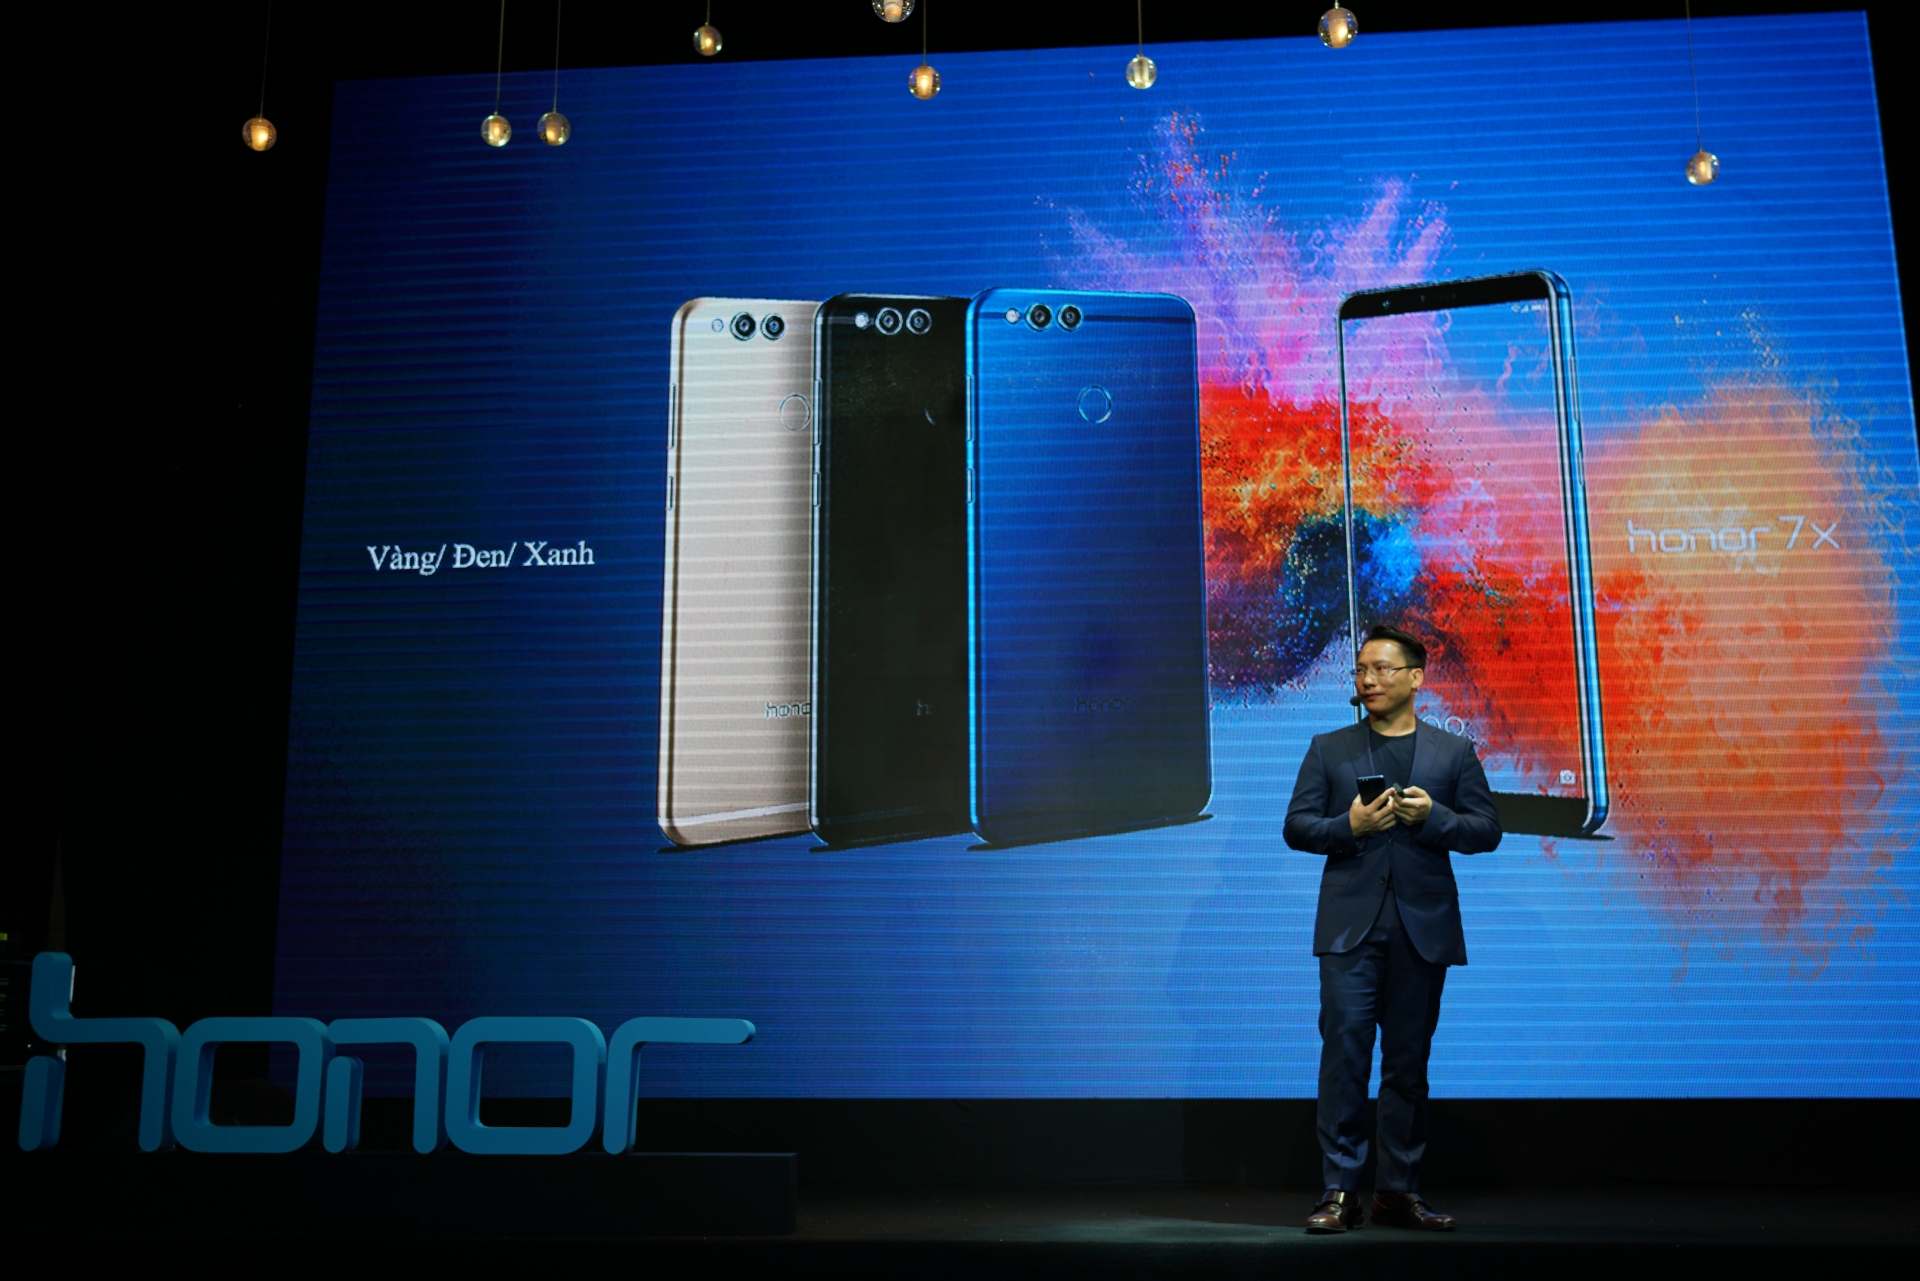 Honor aims to break into Vietnam’s top 3 smartphone brands